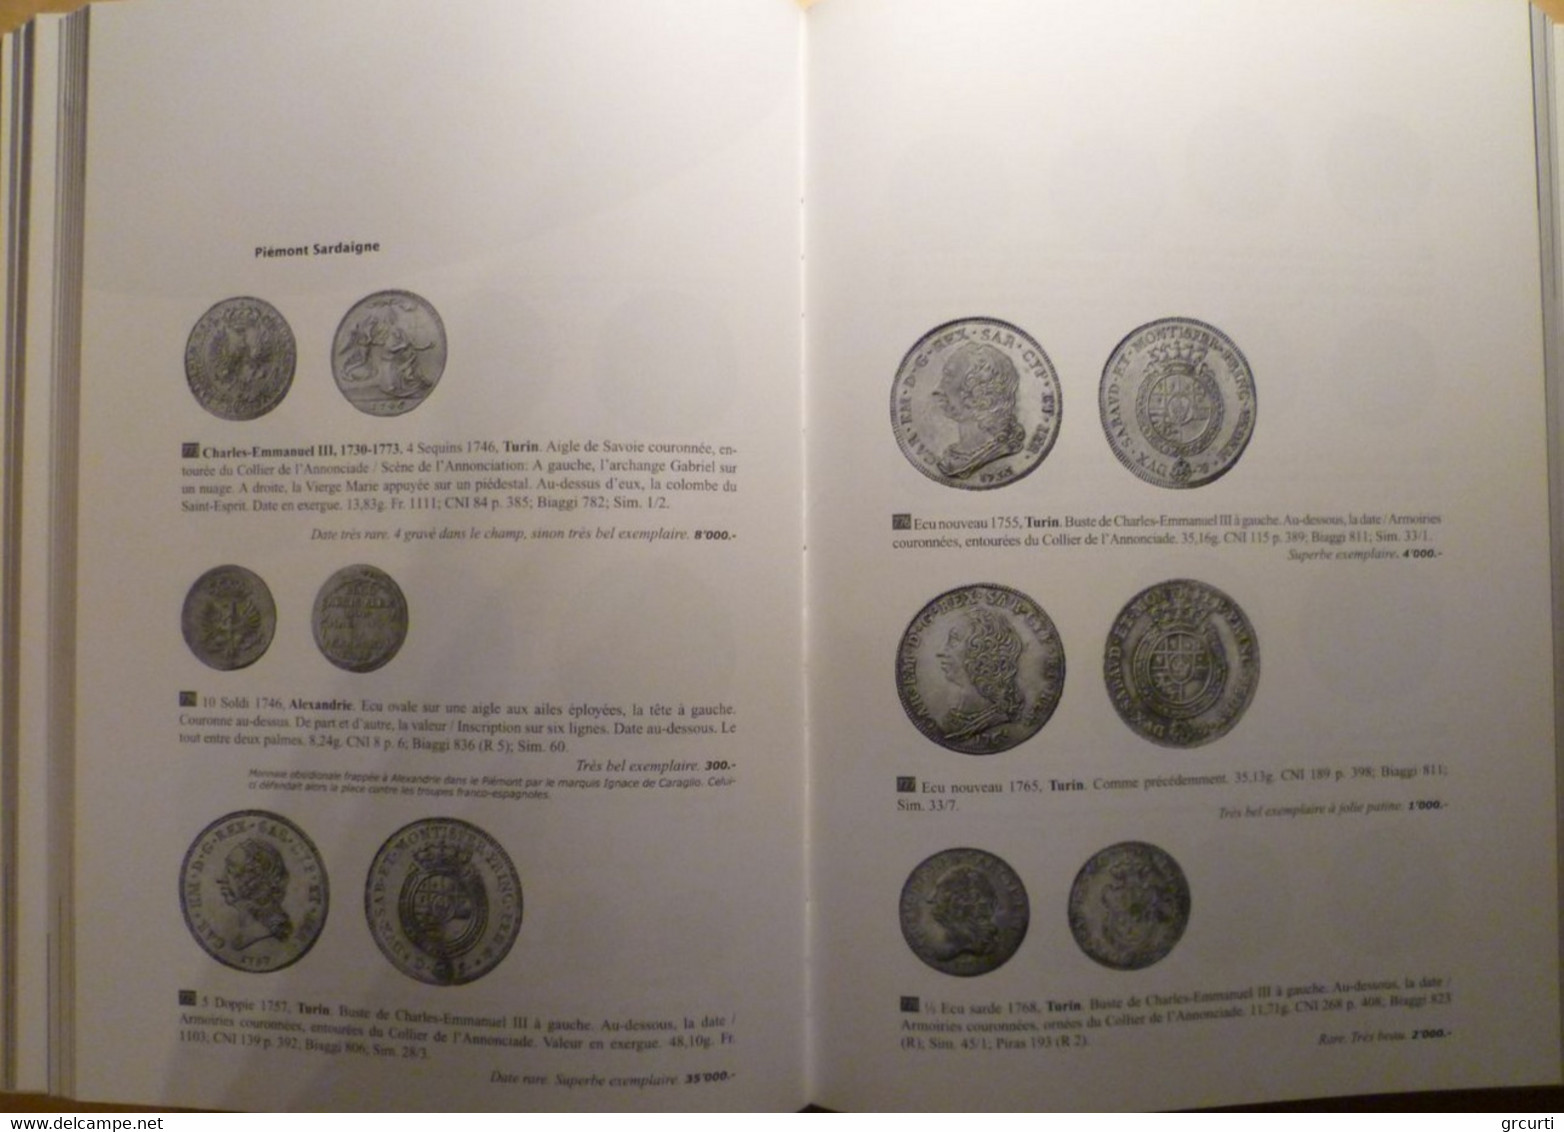 Catalogo D'asta Numismatica Genevensis - Asta N. 3 - 29-30/11/2004 - Livres & Logiciels